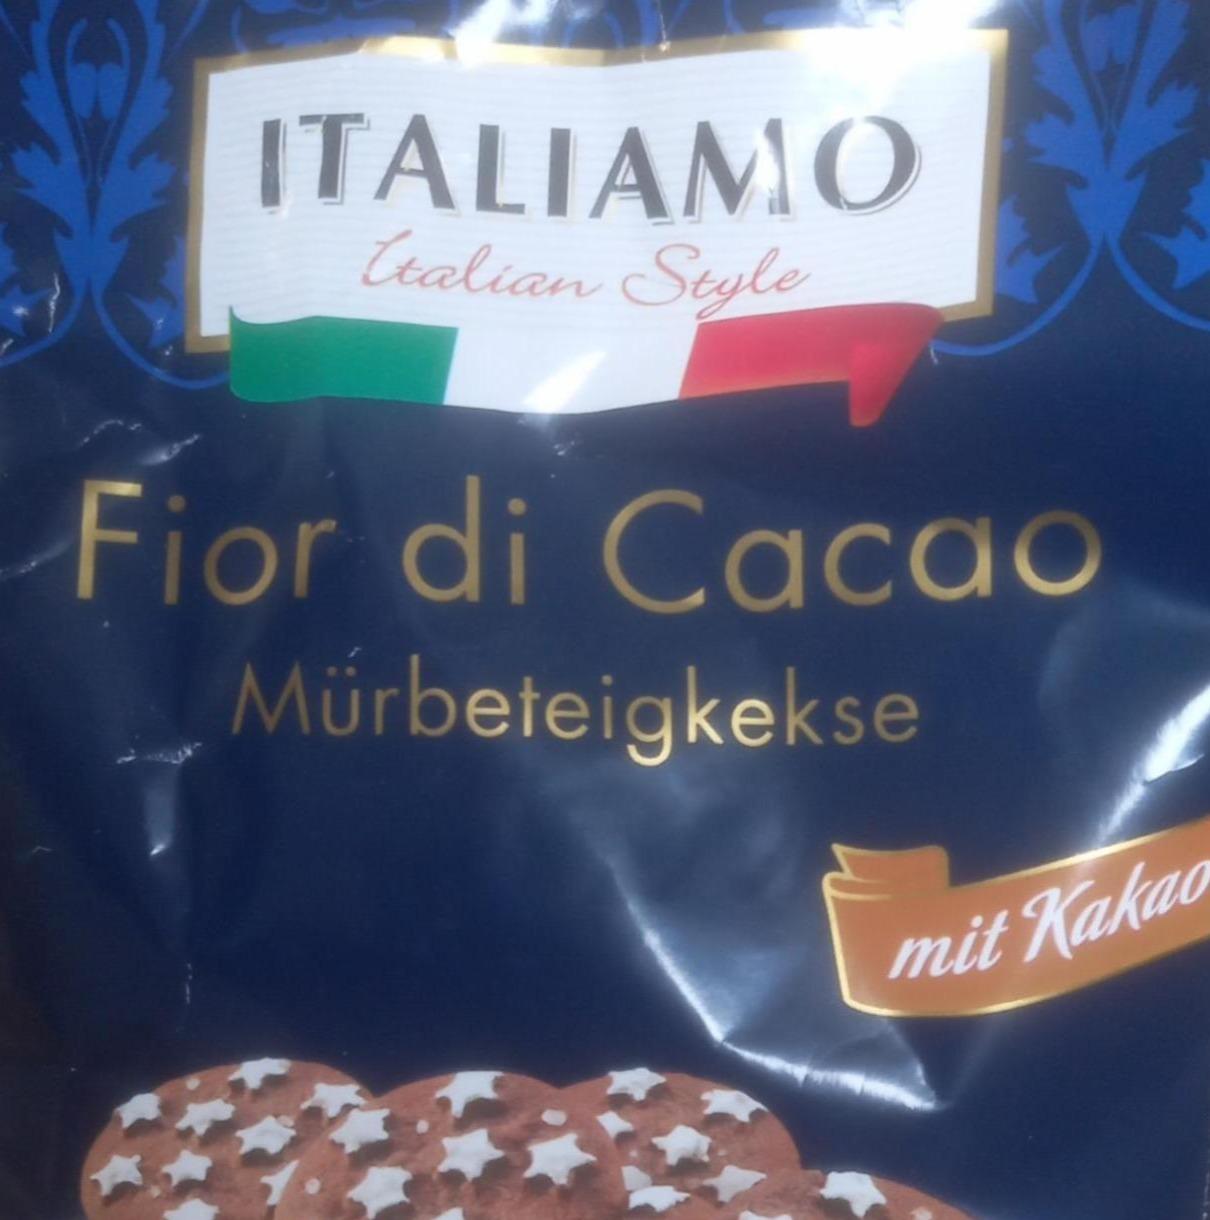 Фото - Печиво Fior di Cacao Mürbeteigkekse Italiamo